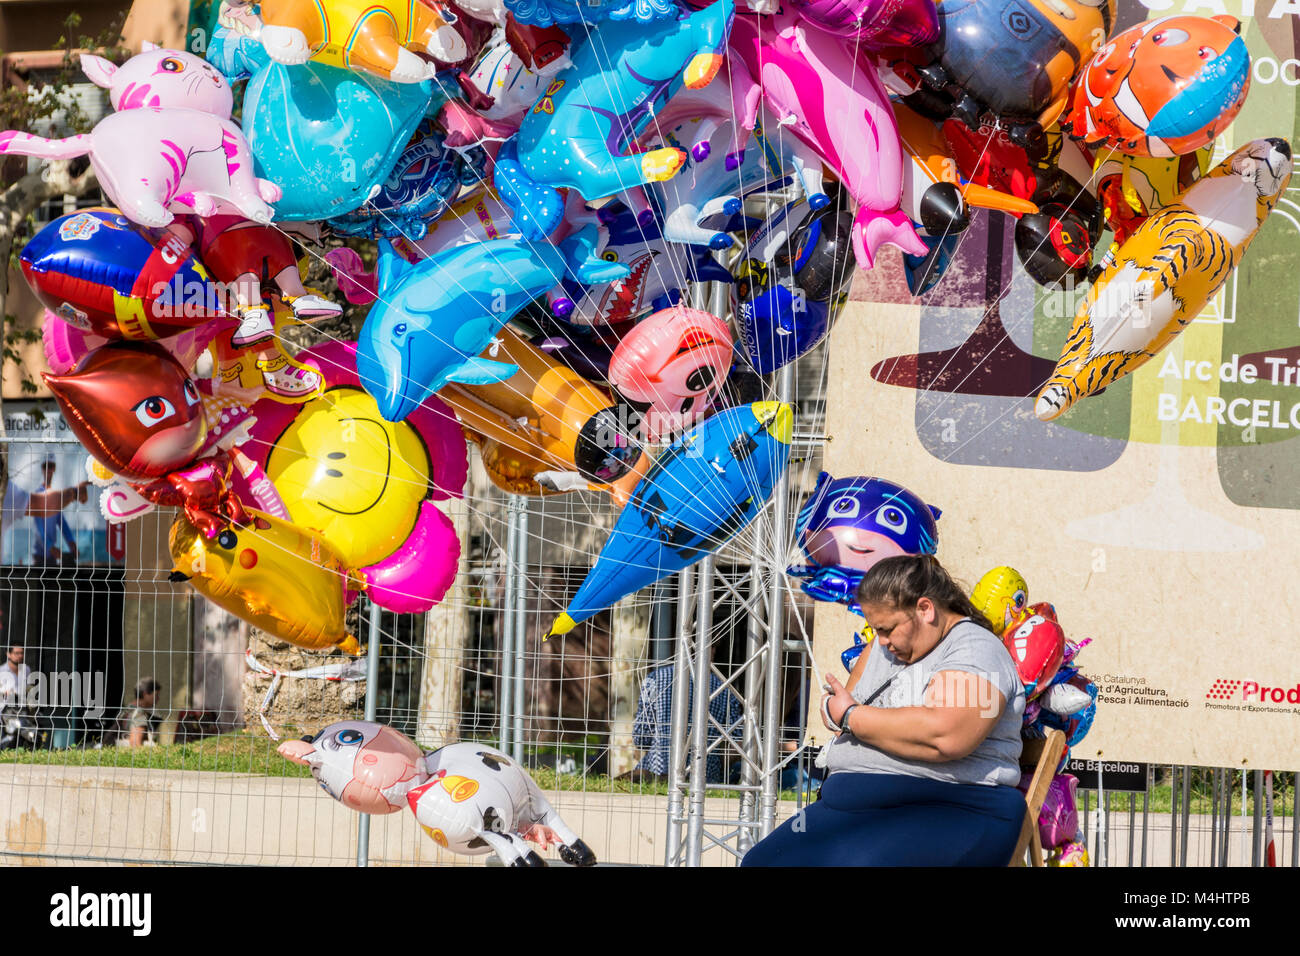 Luftballonverkäuferin in Barcelona, Spanien Stock Photo